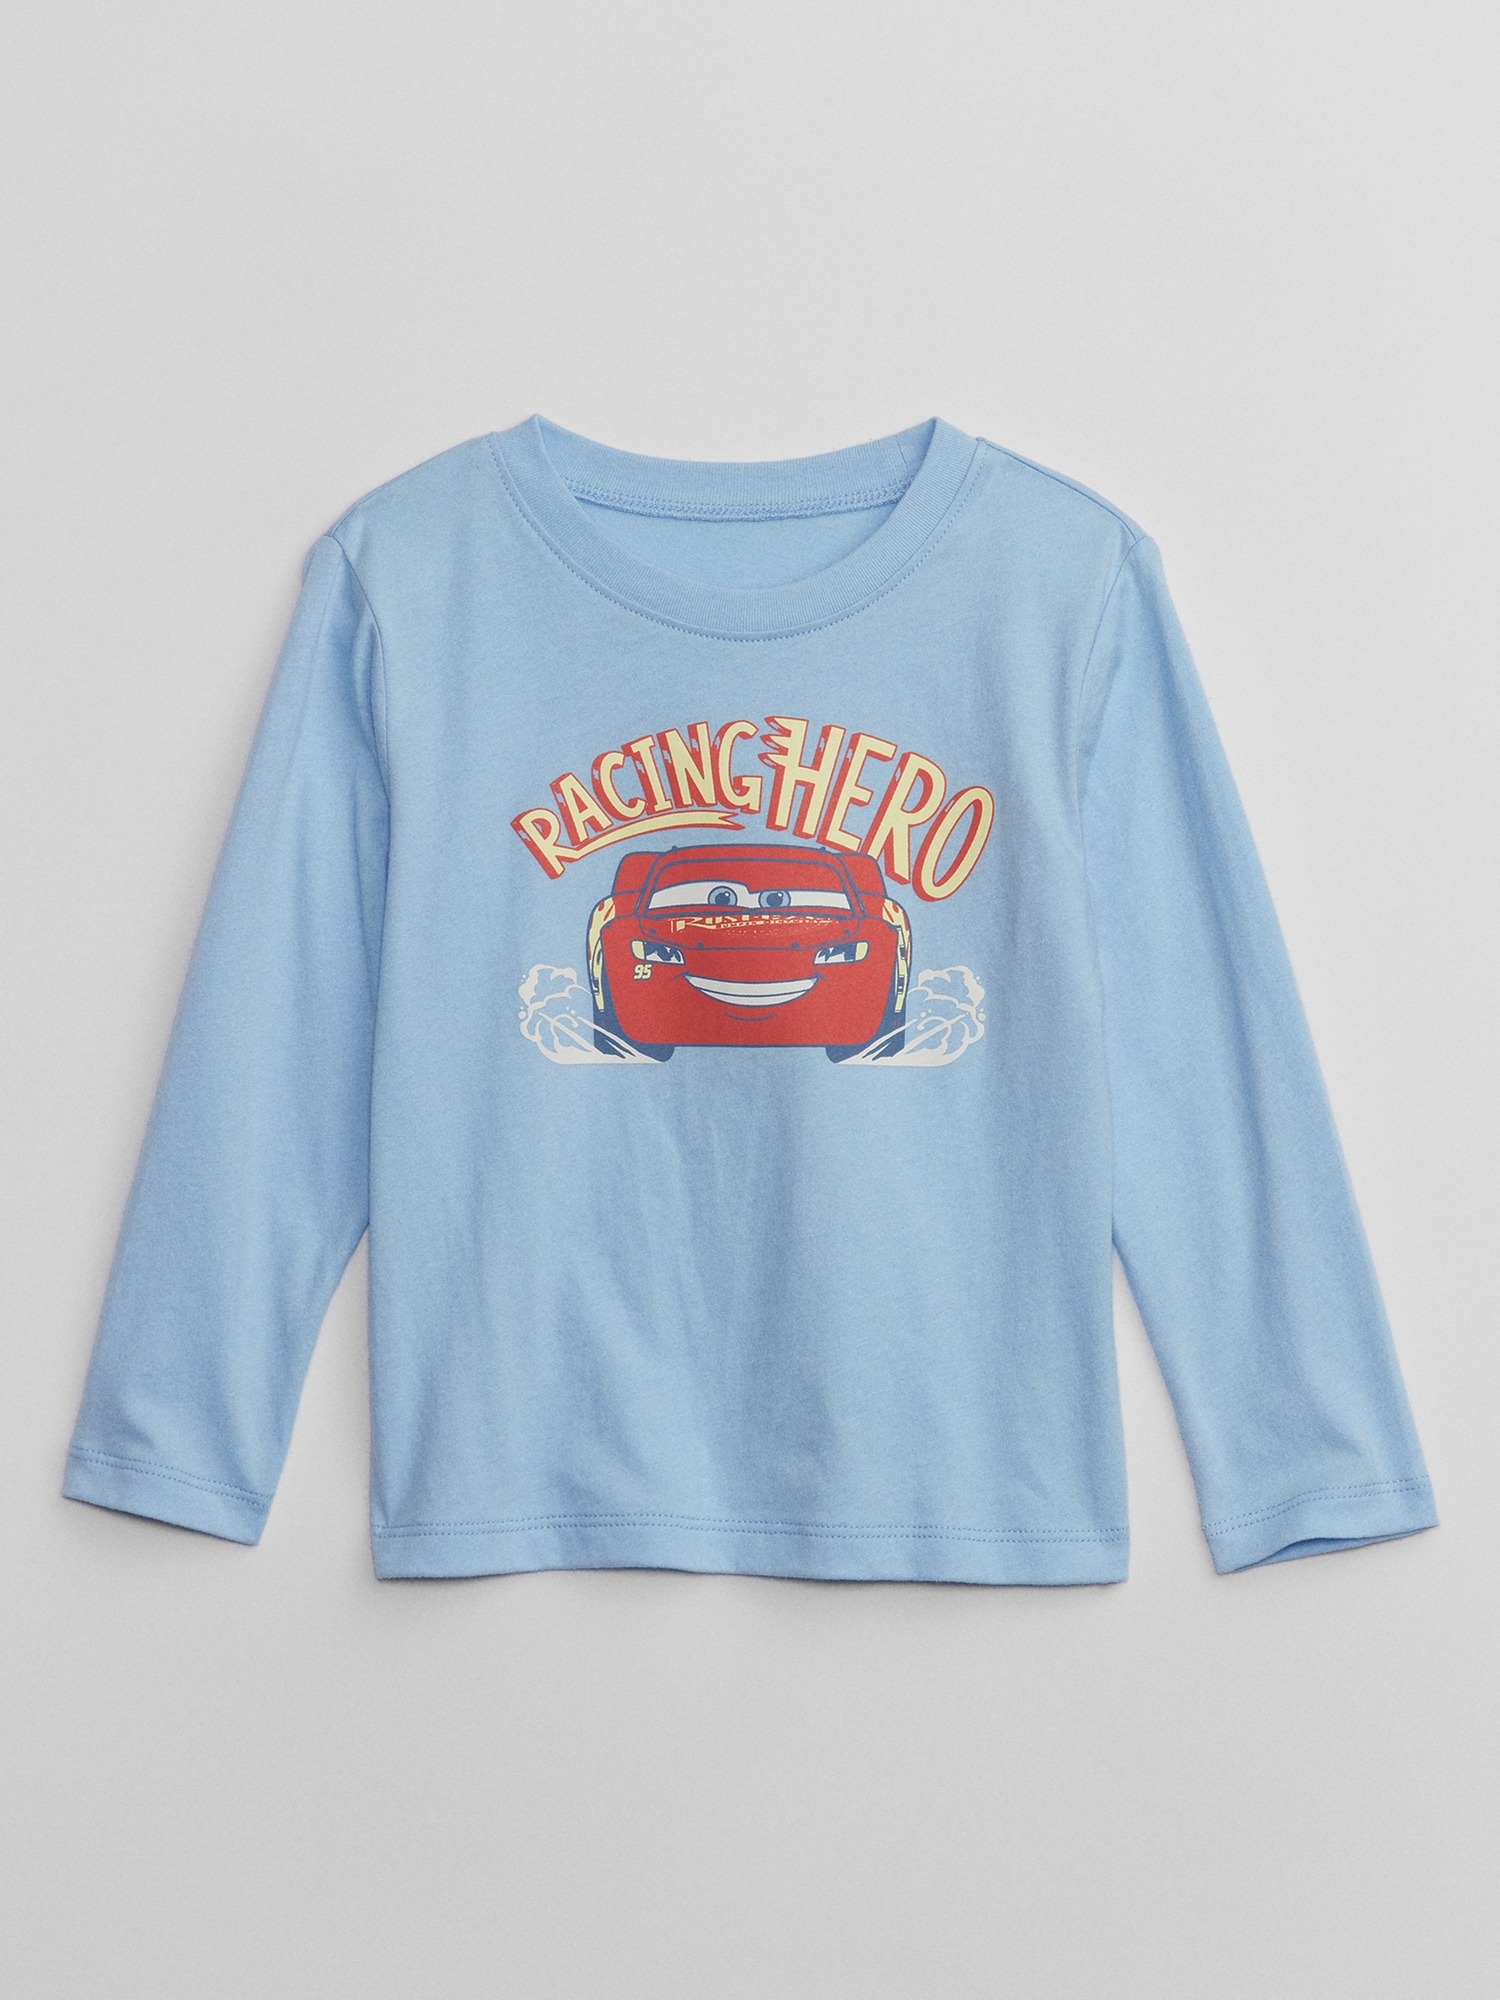 Disney Store Disney Pixar Cars Hooded Sweatshirt For Kids